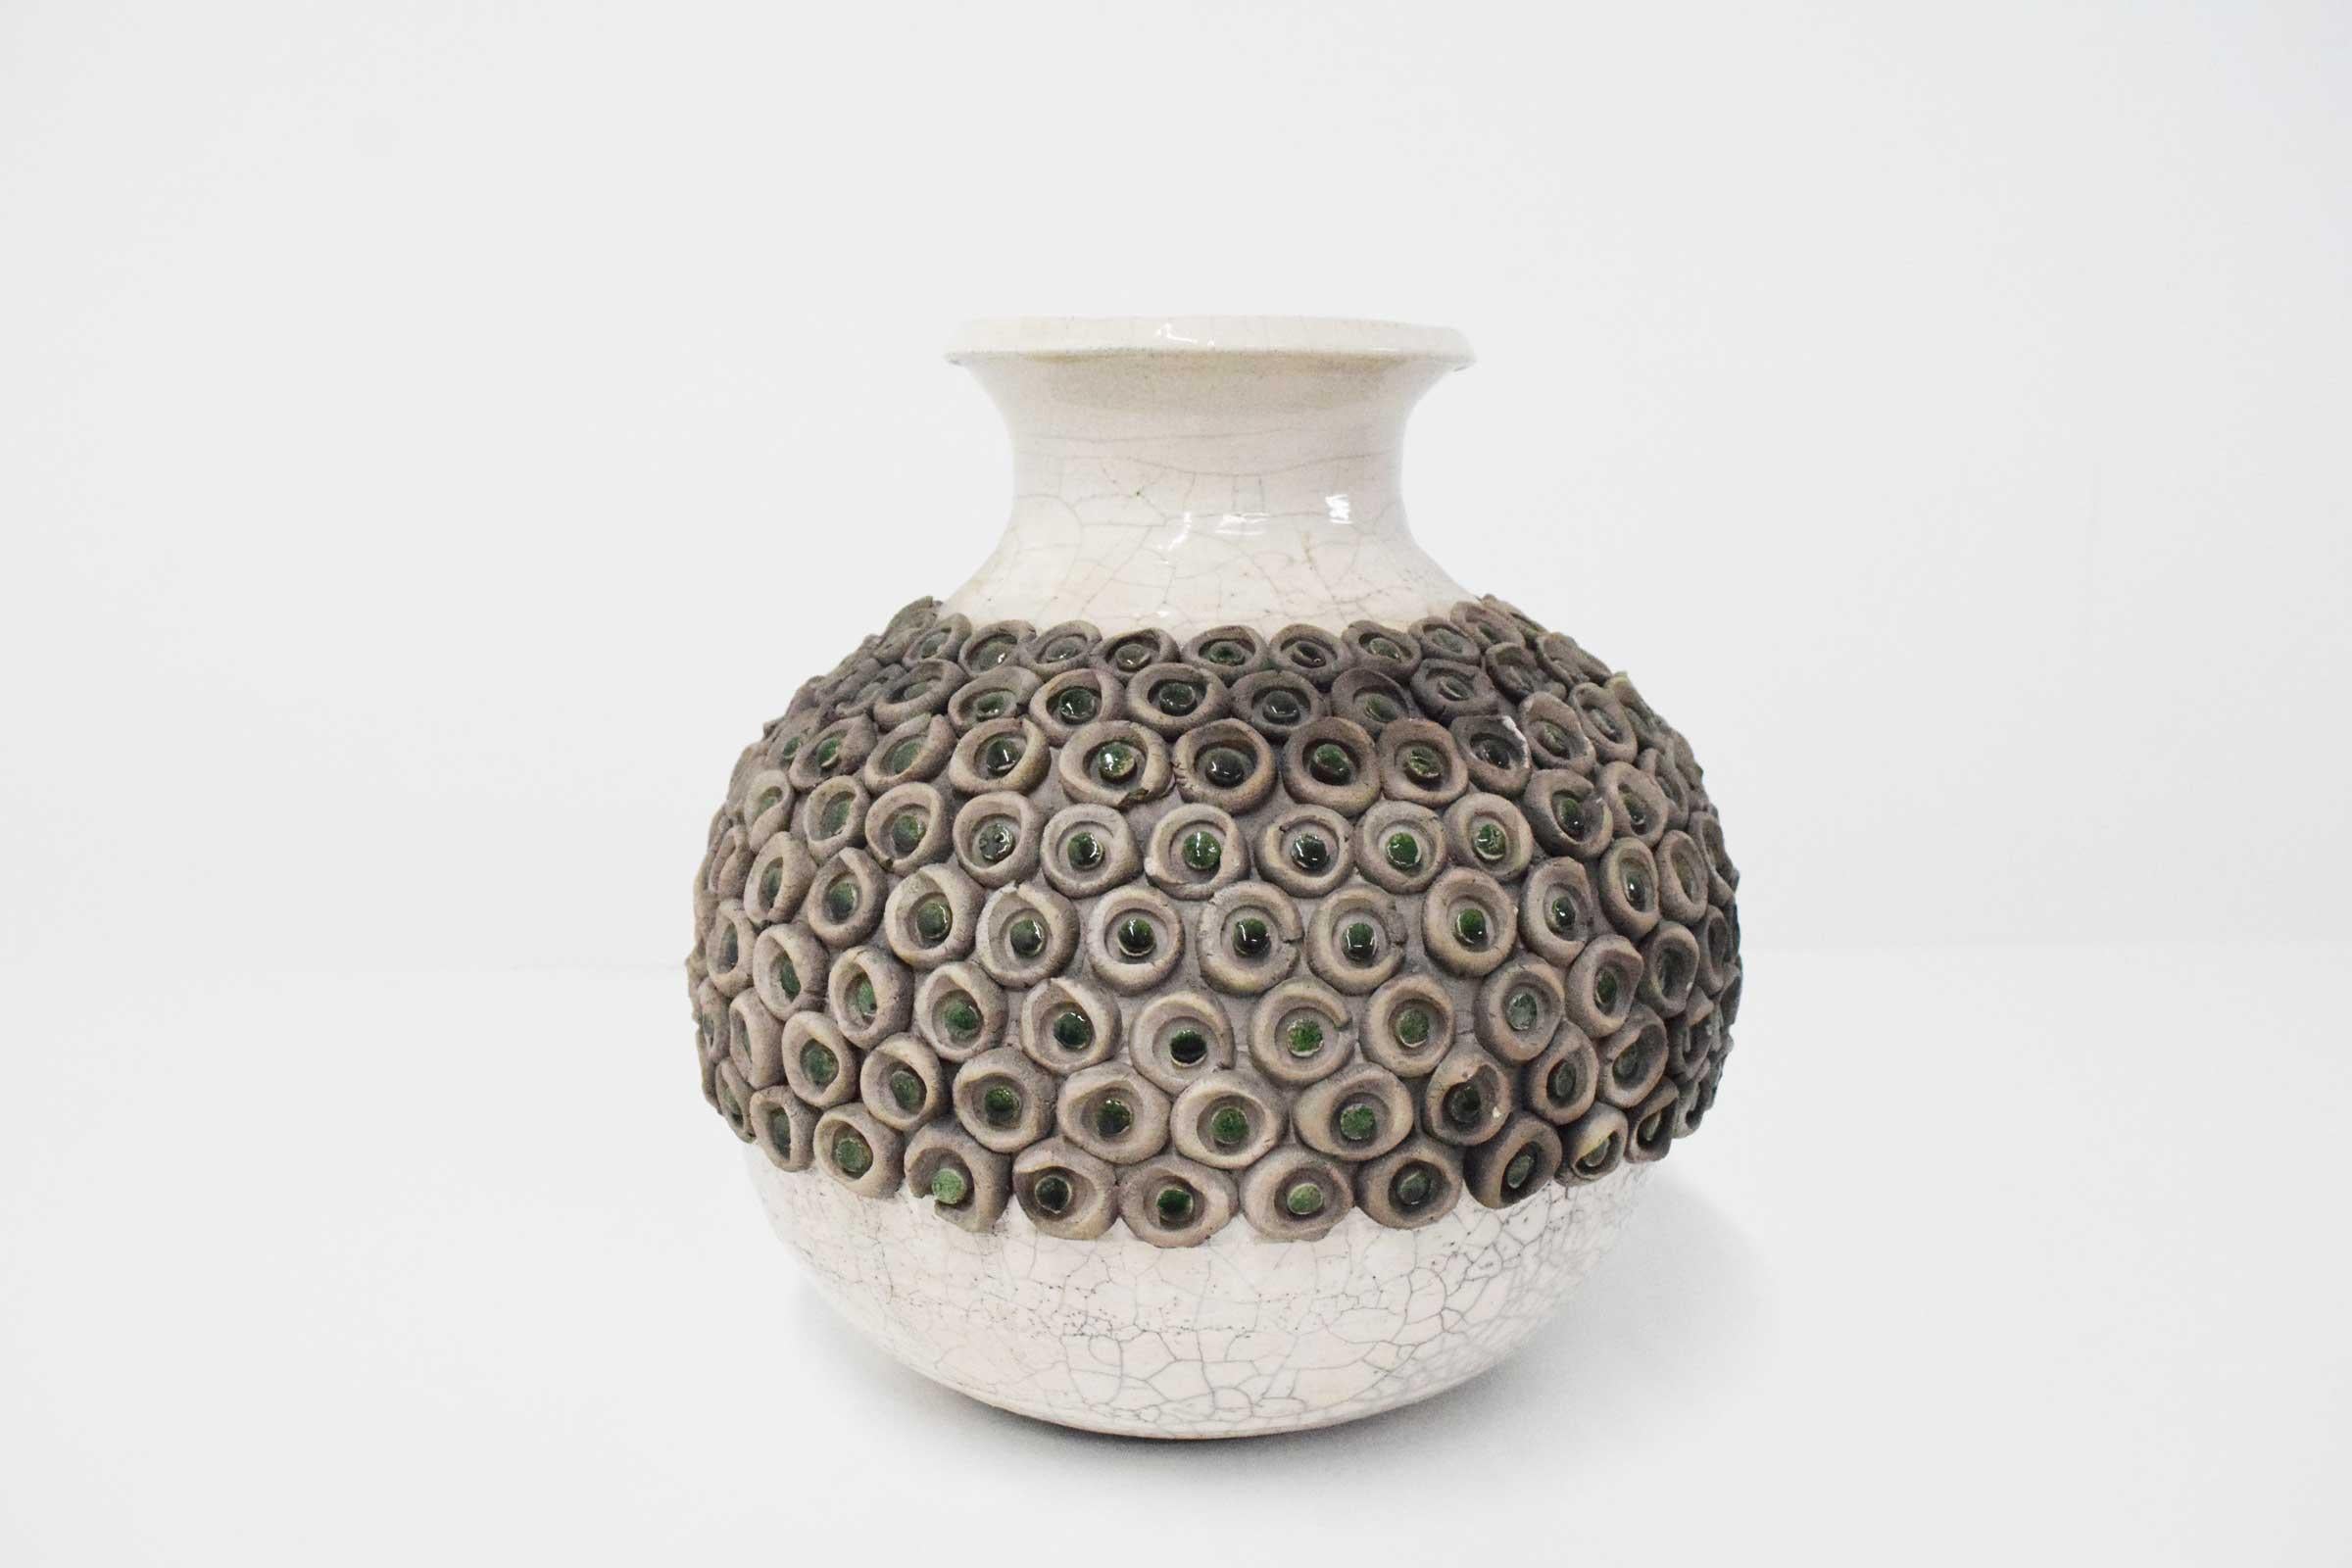 Viele interessante Details in dieser schönen Mid-Century Modern Keramikvase.  Eine Vase aus glasierter Keramik mit kreisförmigen Keramikkreisen, die mit grün glasierten Keramikpunkten verziert sind. 